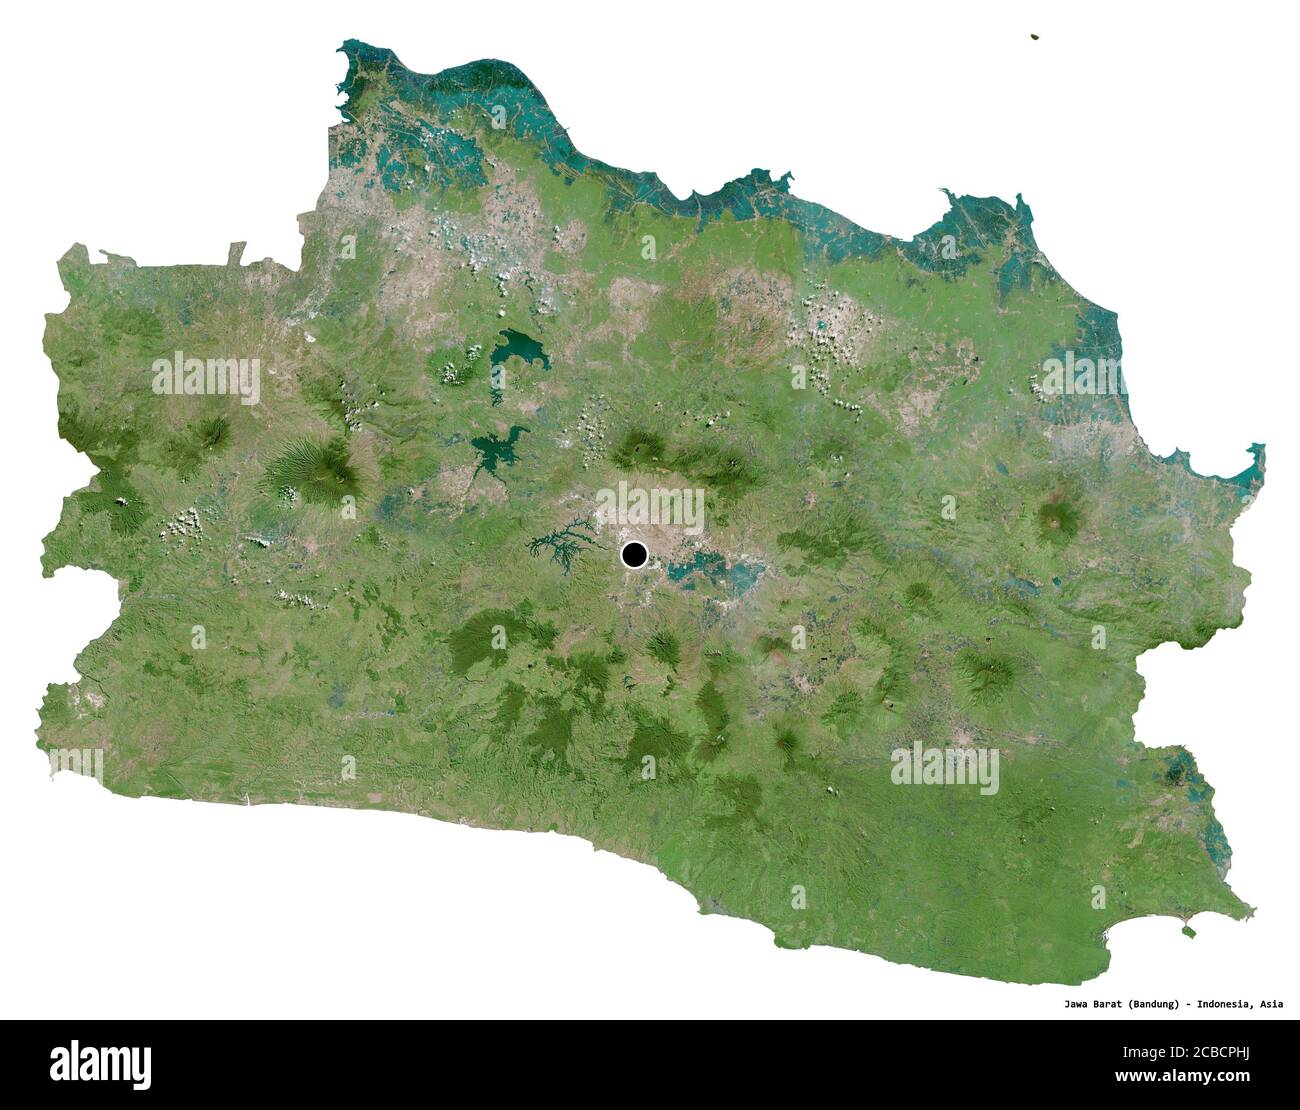 Forme de Jawa Barat, province d'Indonésie, avec sa capitale isolée sur fond blanc. Imagerie satellite. Rendu 3D Banque D'Images